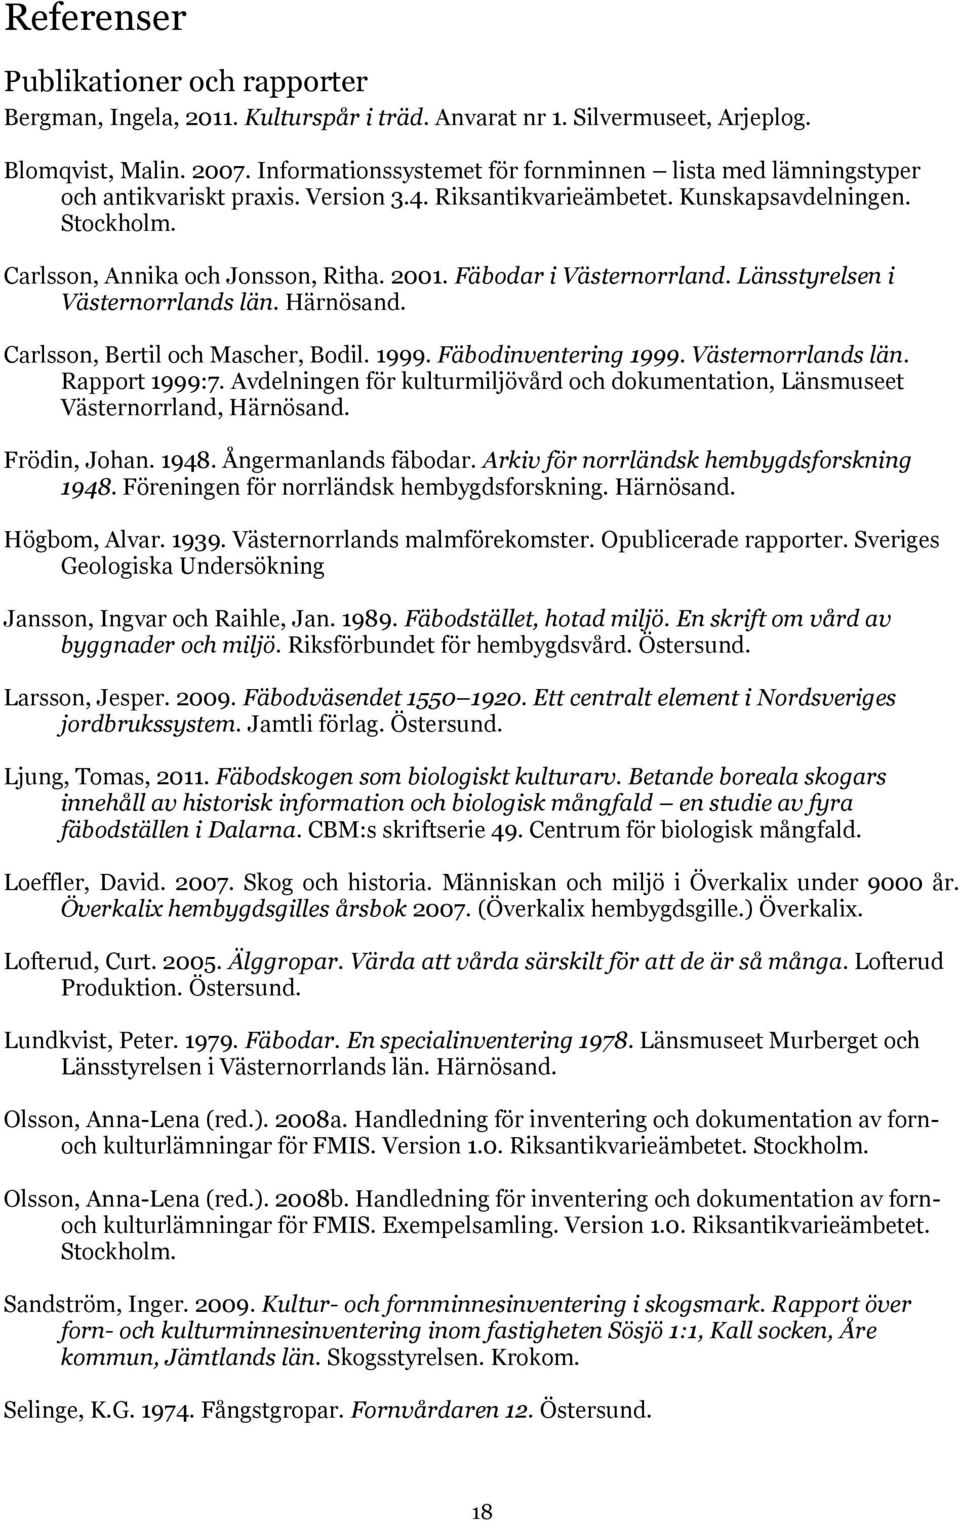 Fäbodar i Västernorrland. Länsstyrelsen i Västernorrlands län. Härnösand. Carlsson, Bertil och Mascher, Bodil. 1999. Fäbodinventering 1999. Västernorrlands län. Rapport 1999:7.